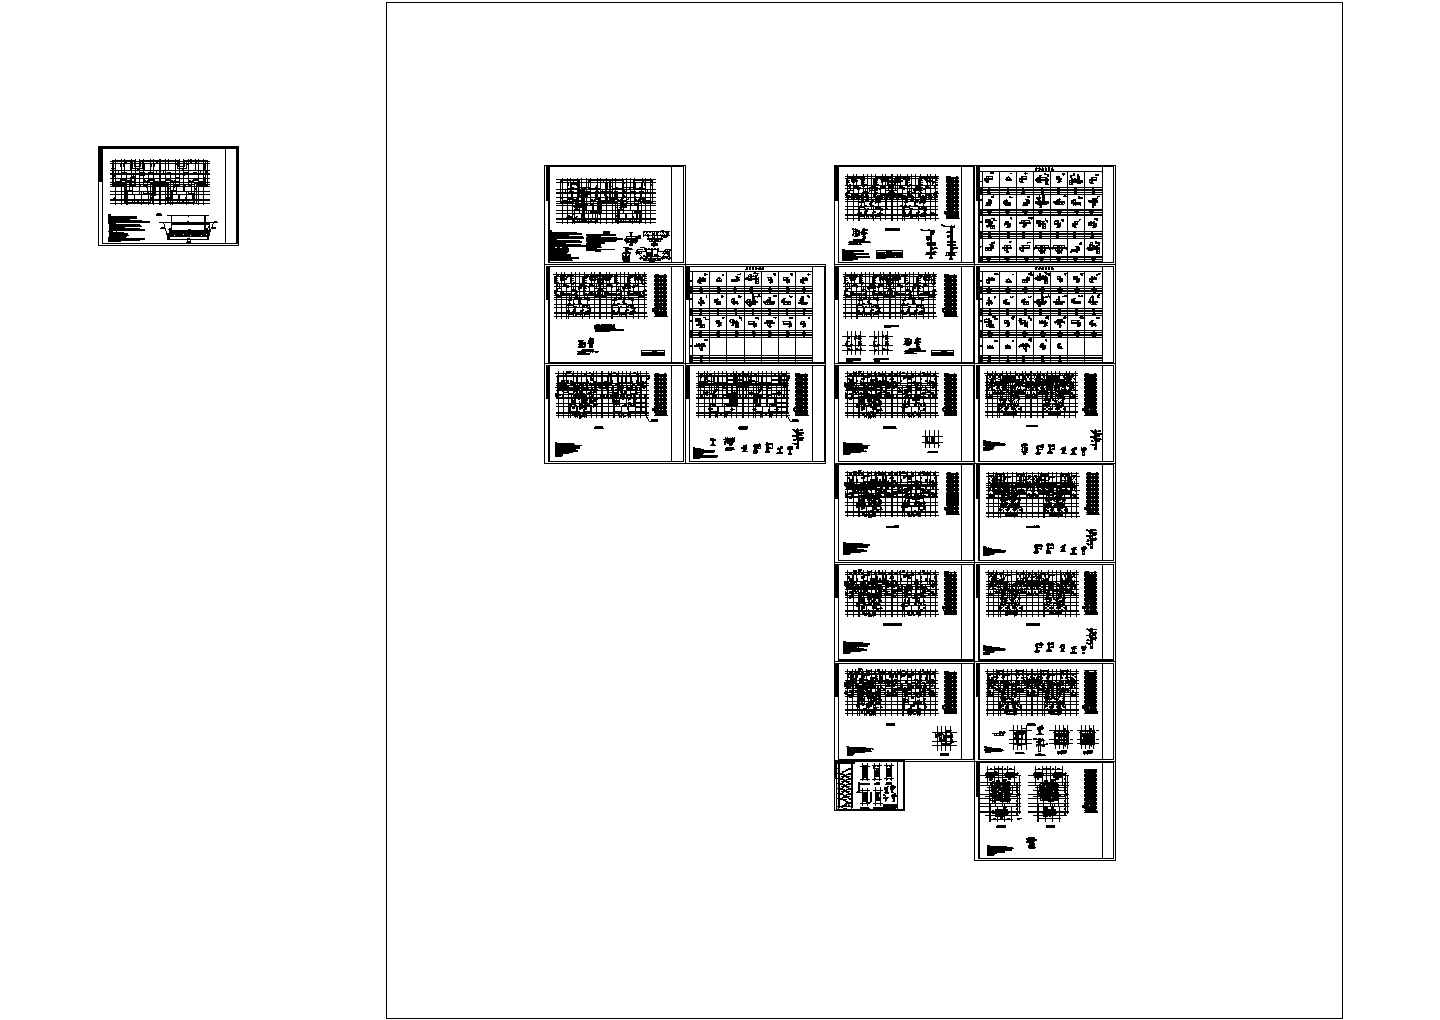 剪力墙结构住宅楼结构施工图（26层筏板基础），20张图纸。